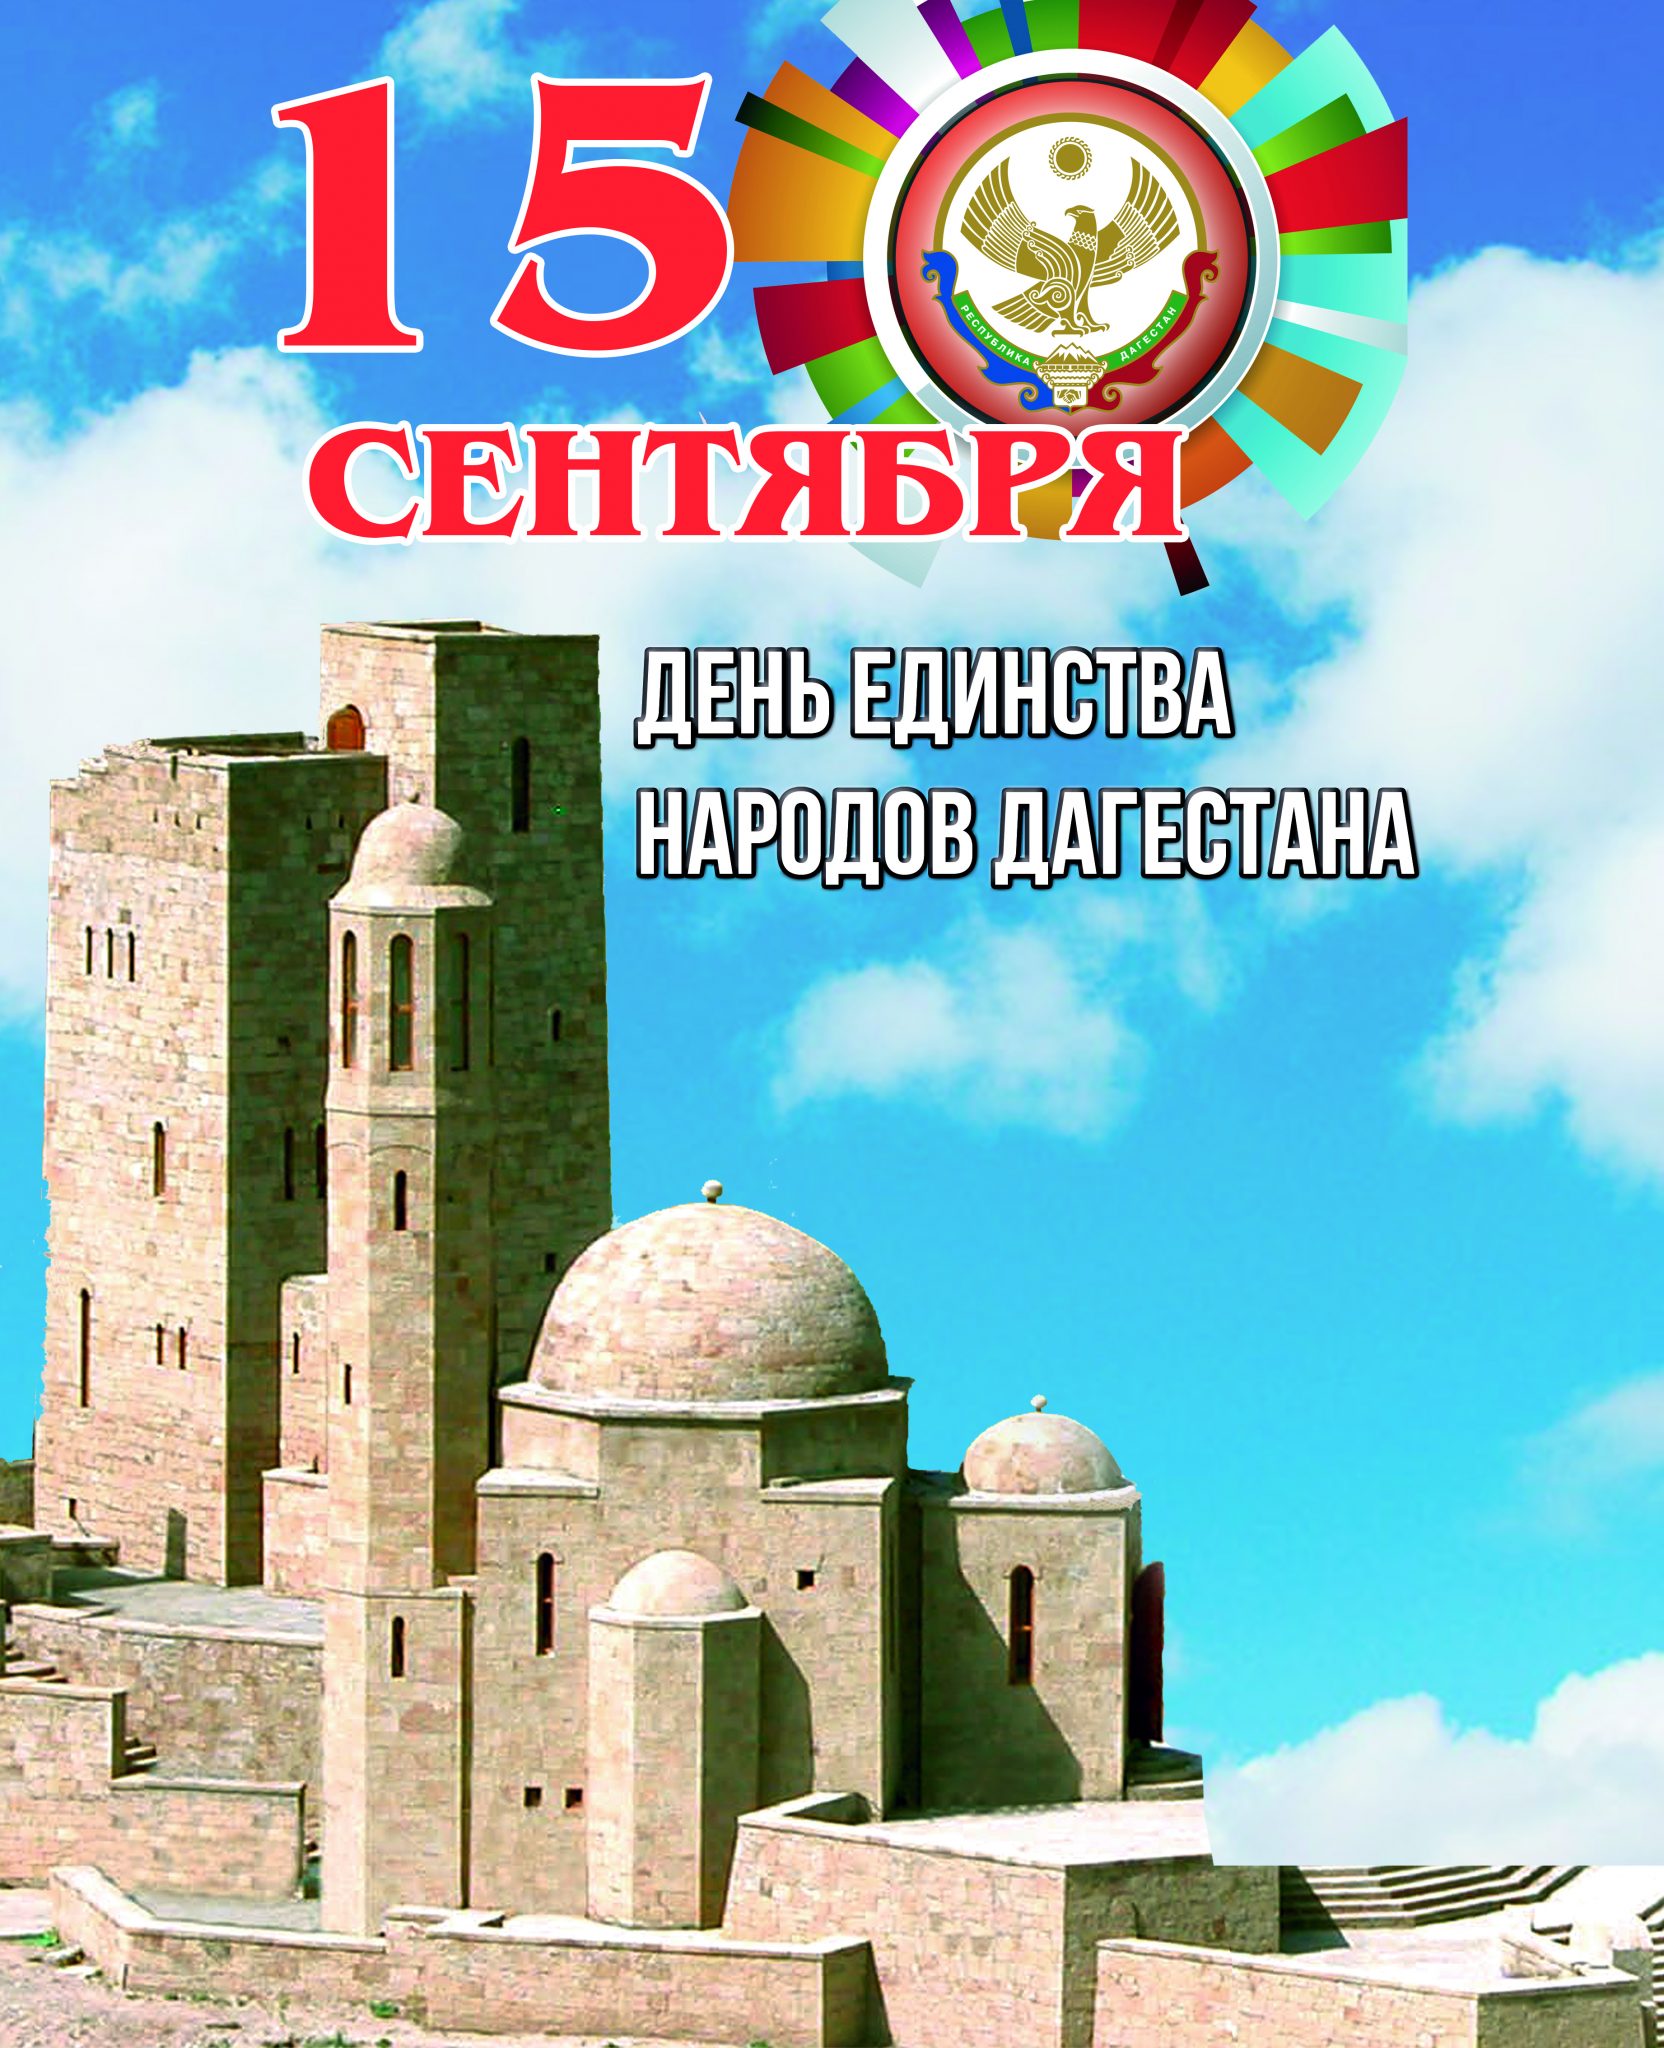 День единения народов Дагестана